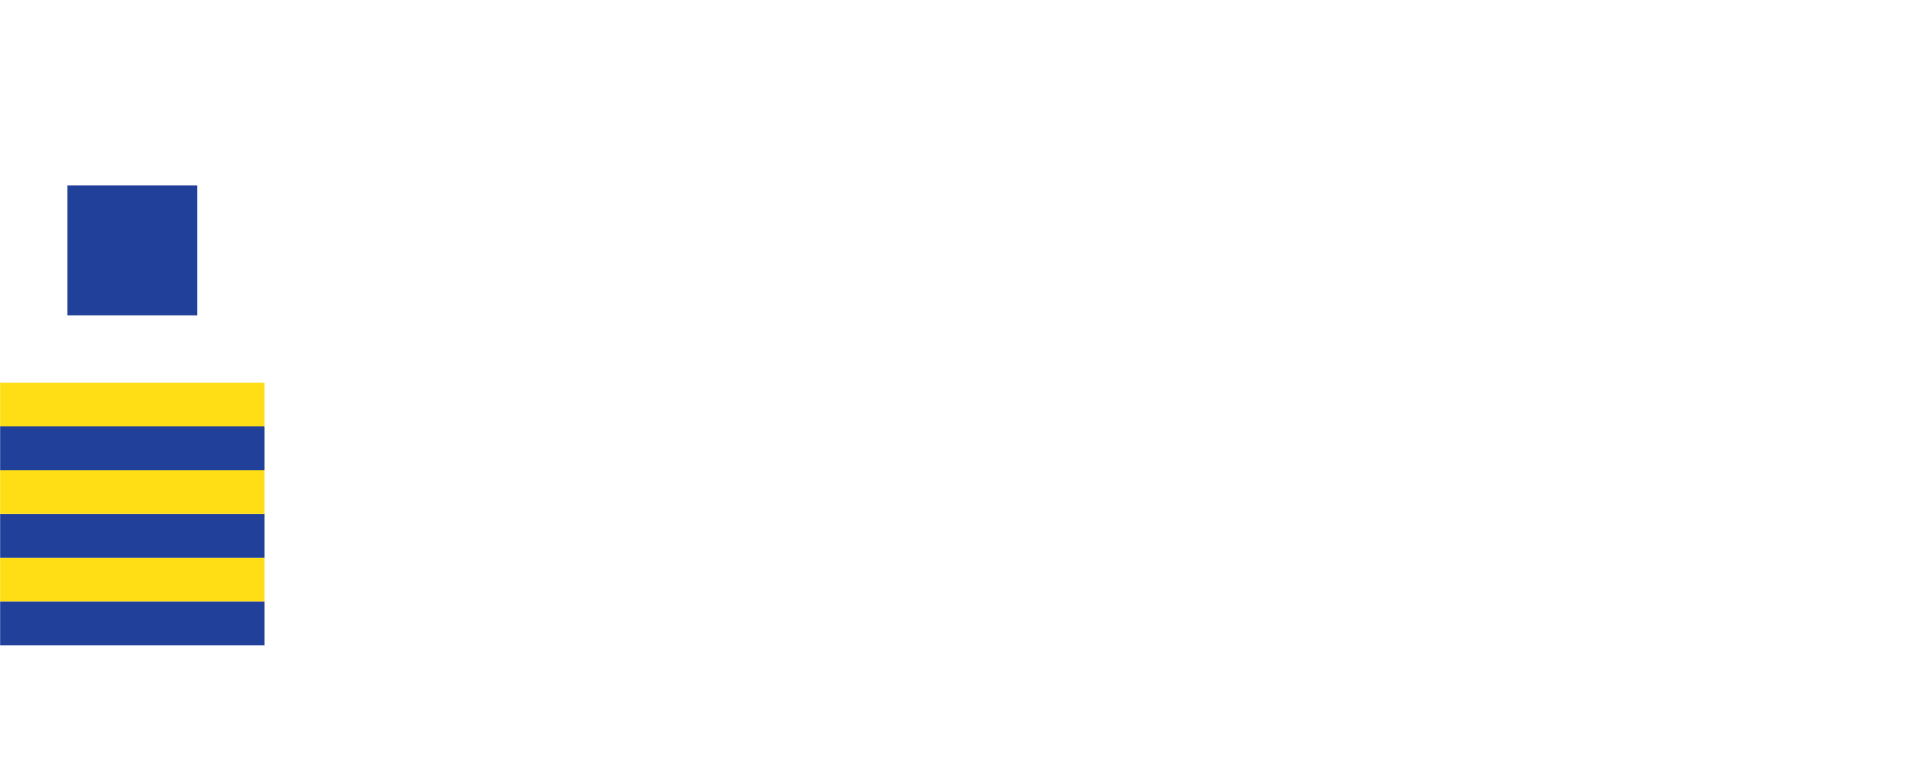 Sandbar Garb logo